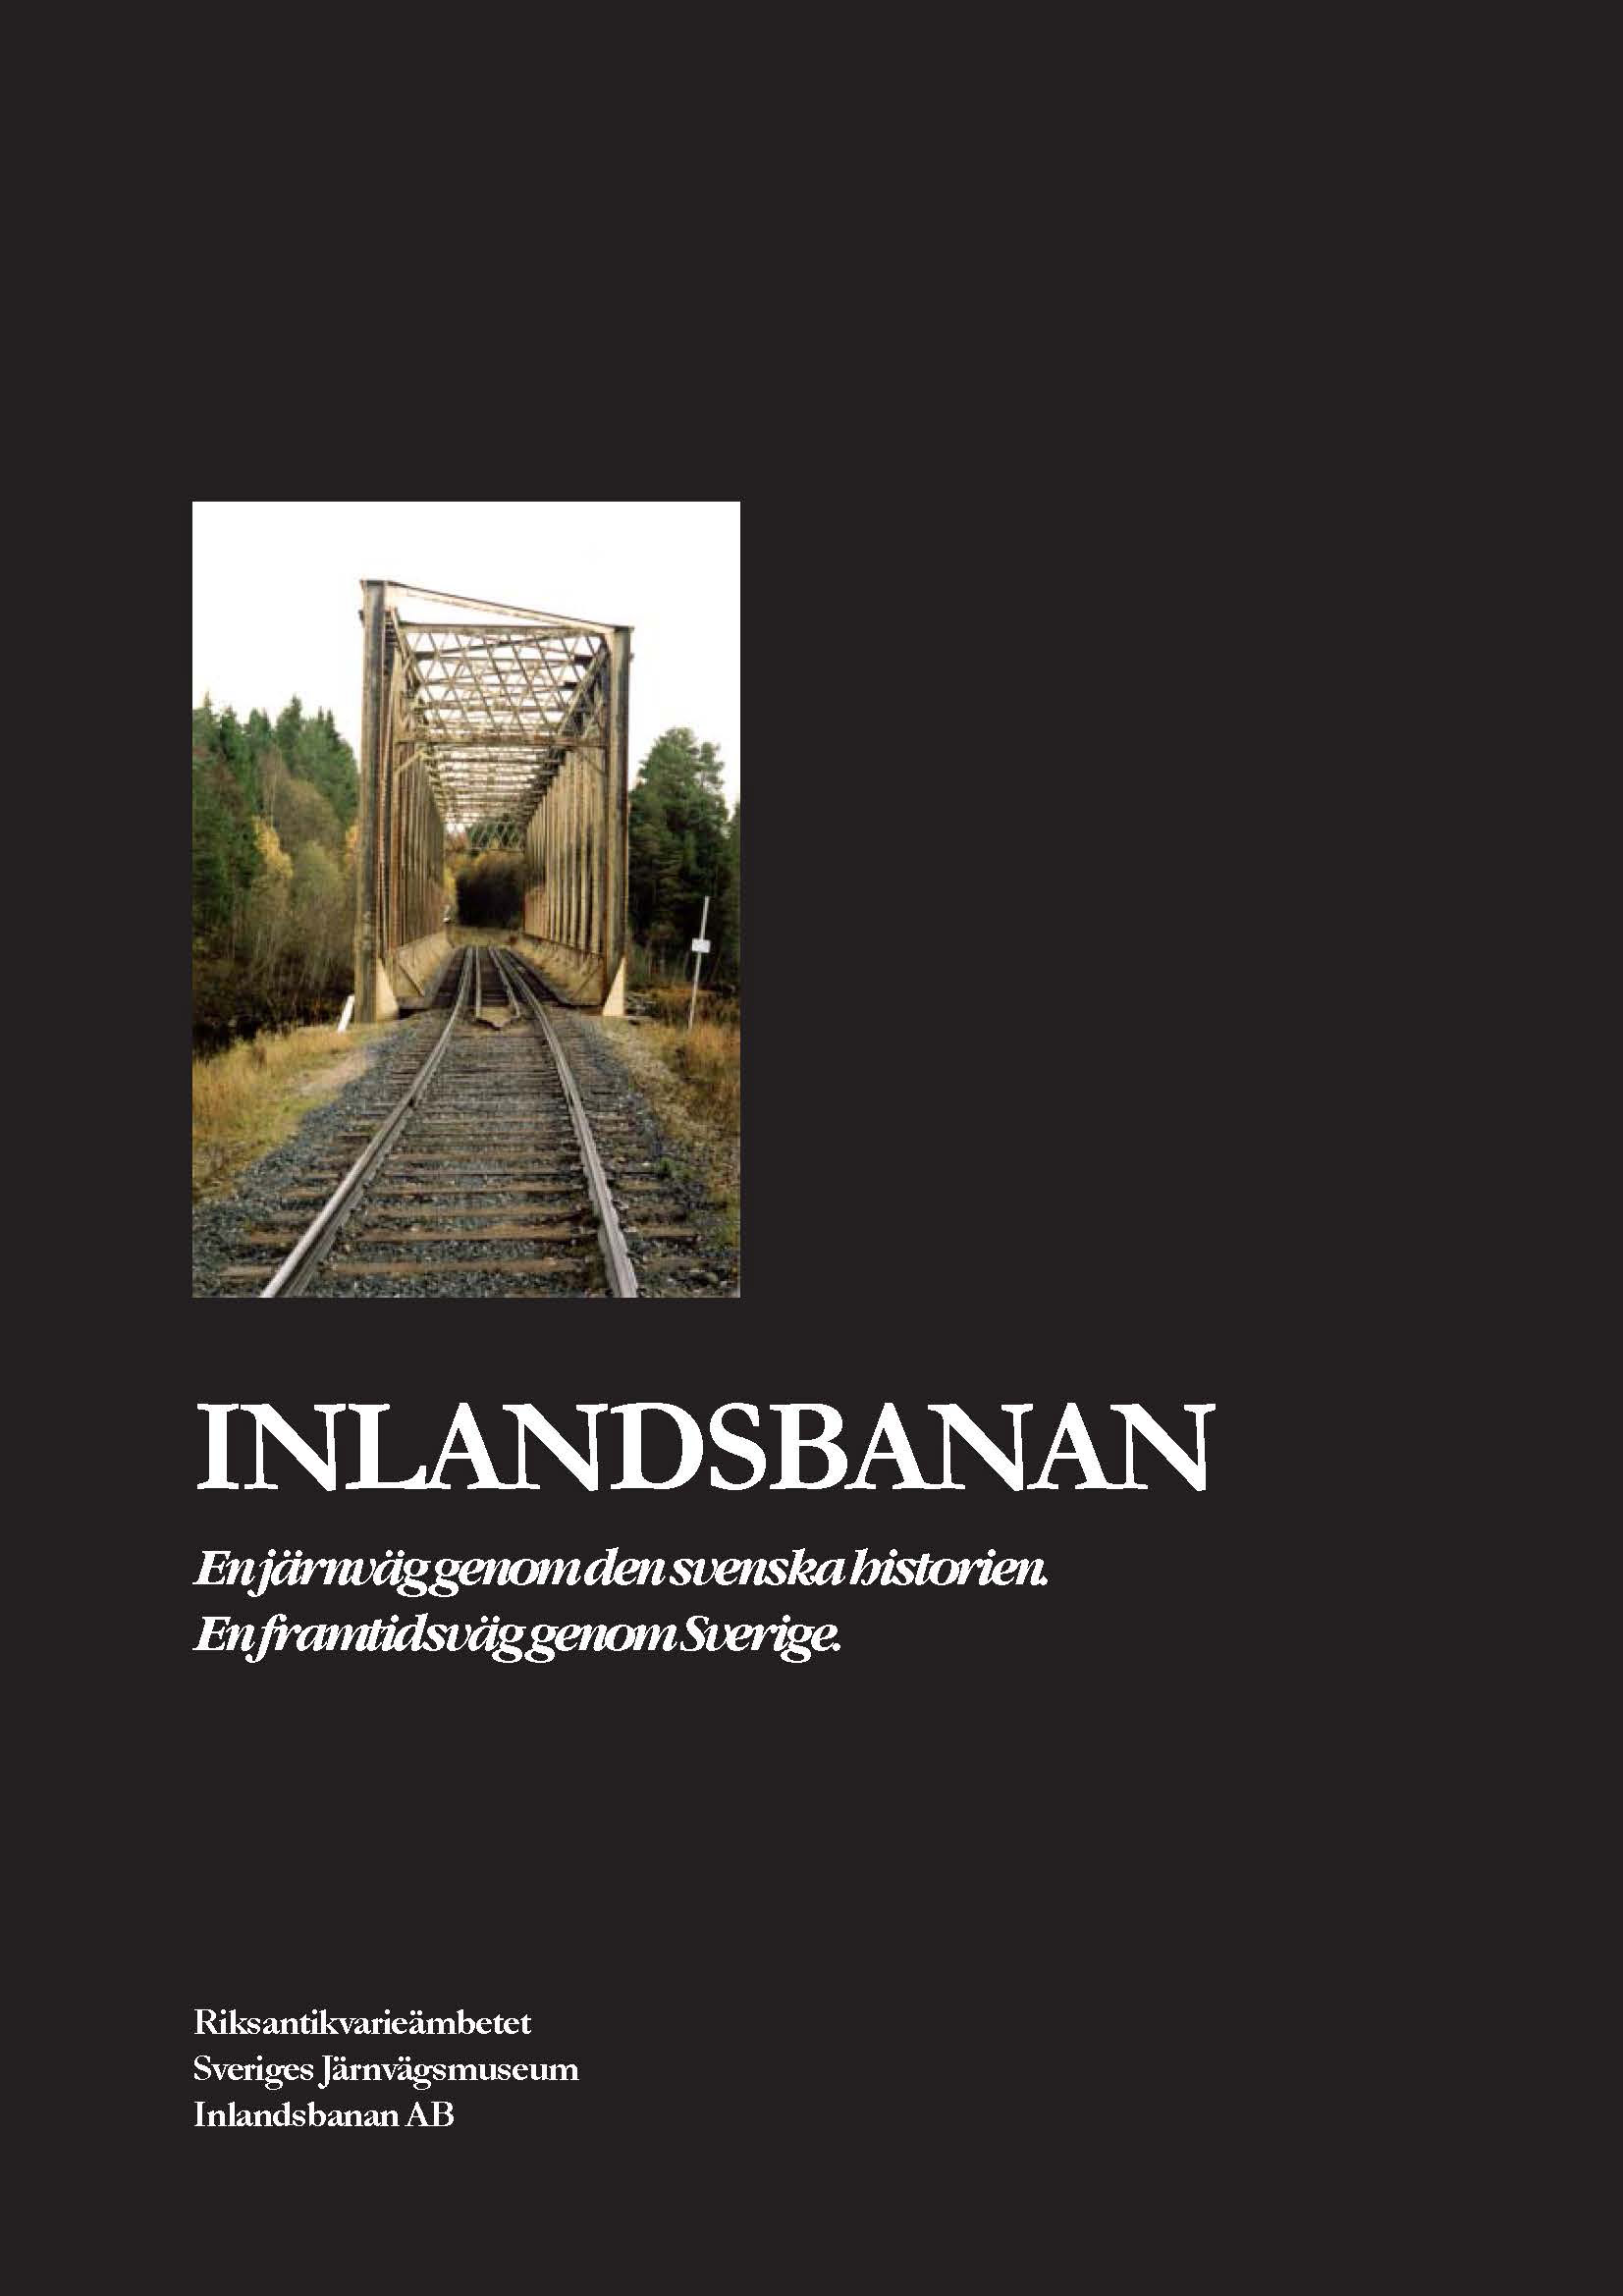 Inlandsbanan -En järnvag genom den svenska historien (Riksantikvarieämbetet)